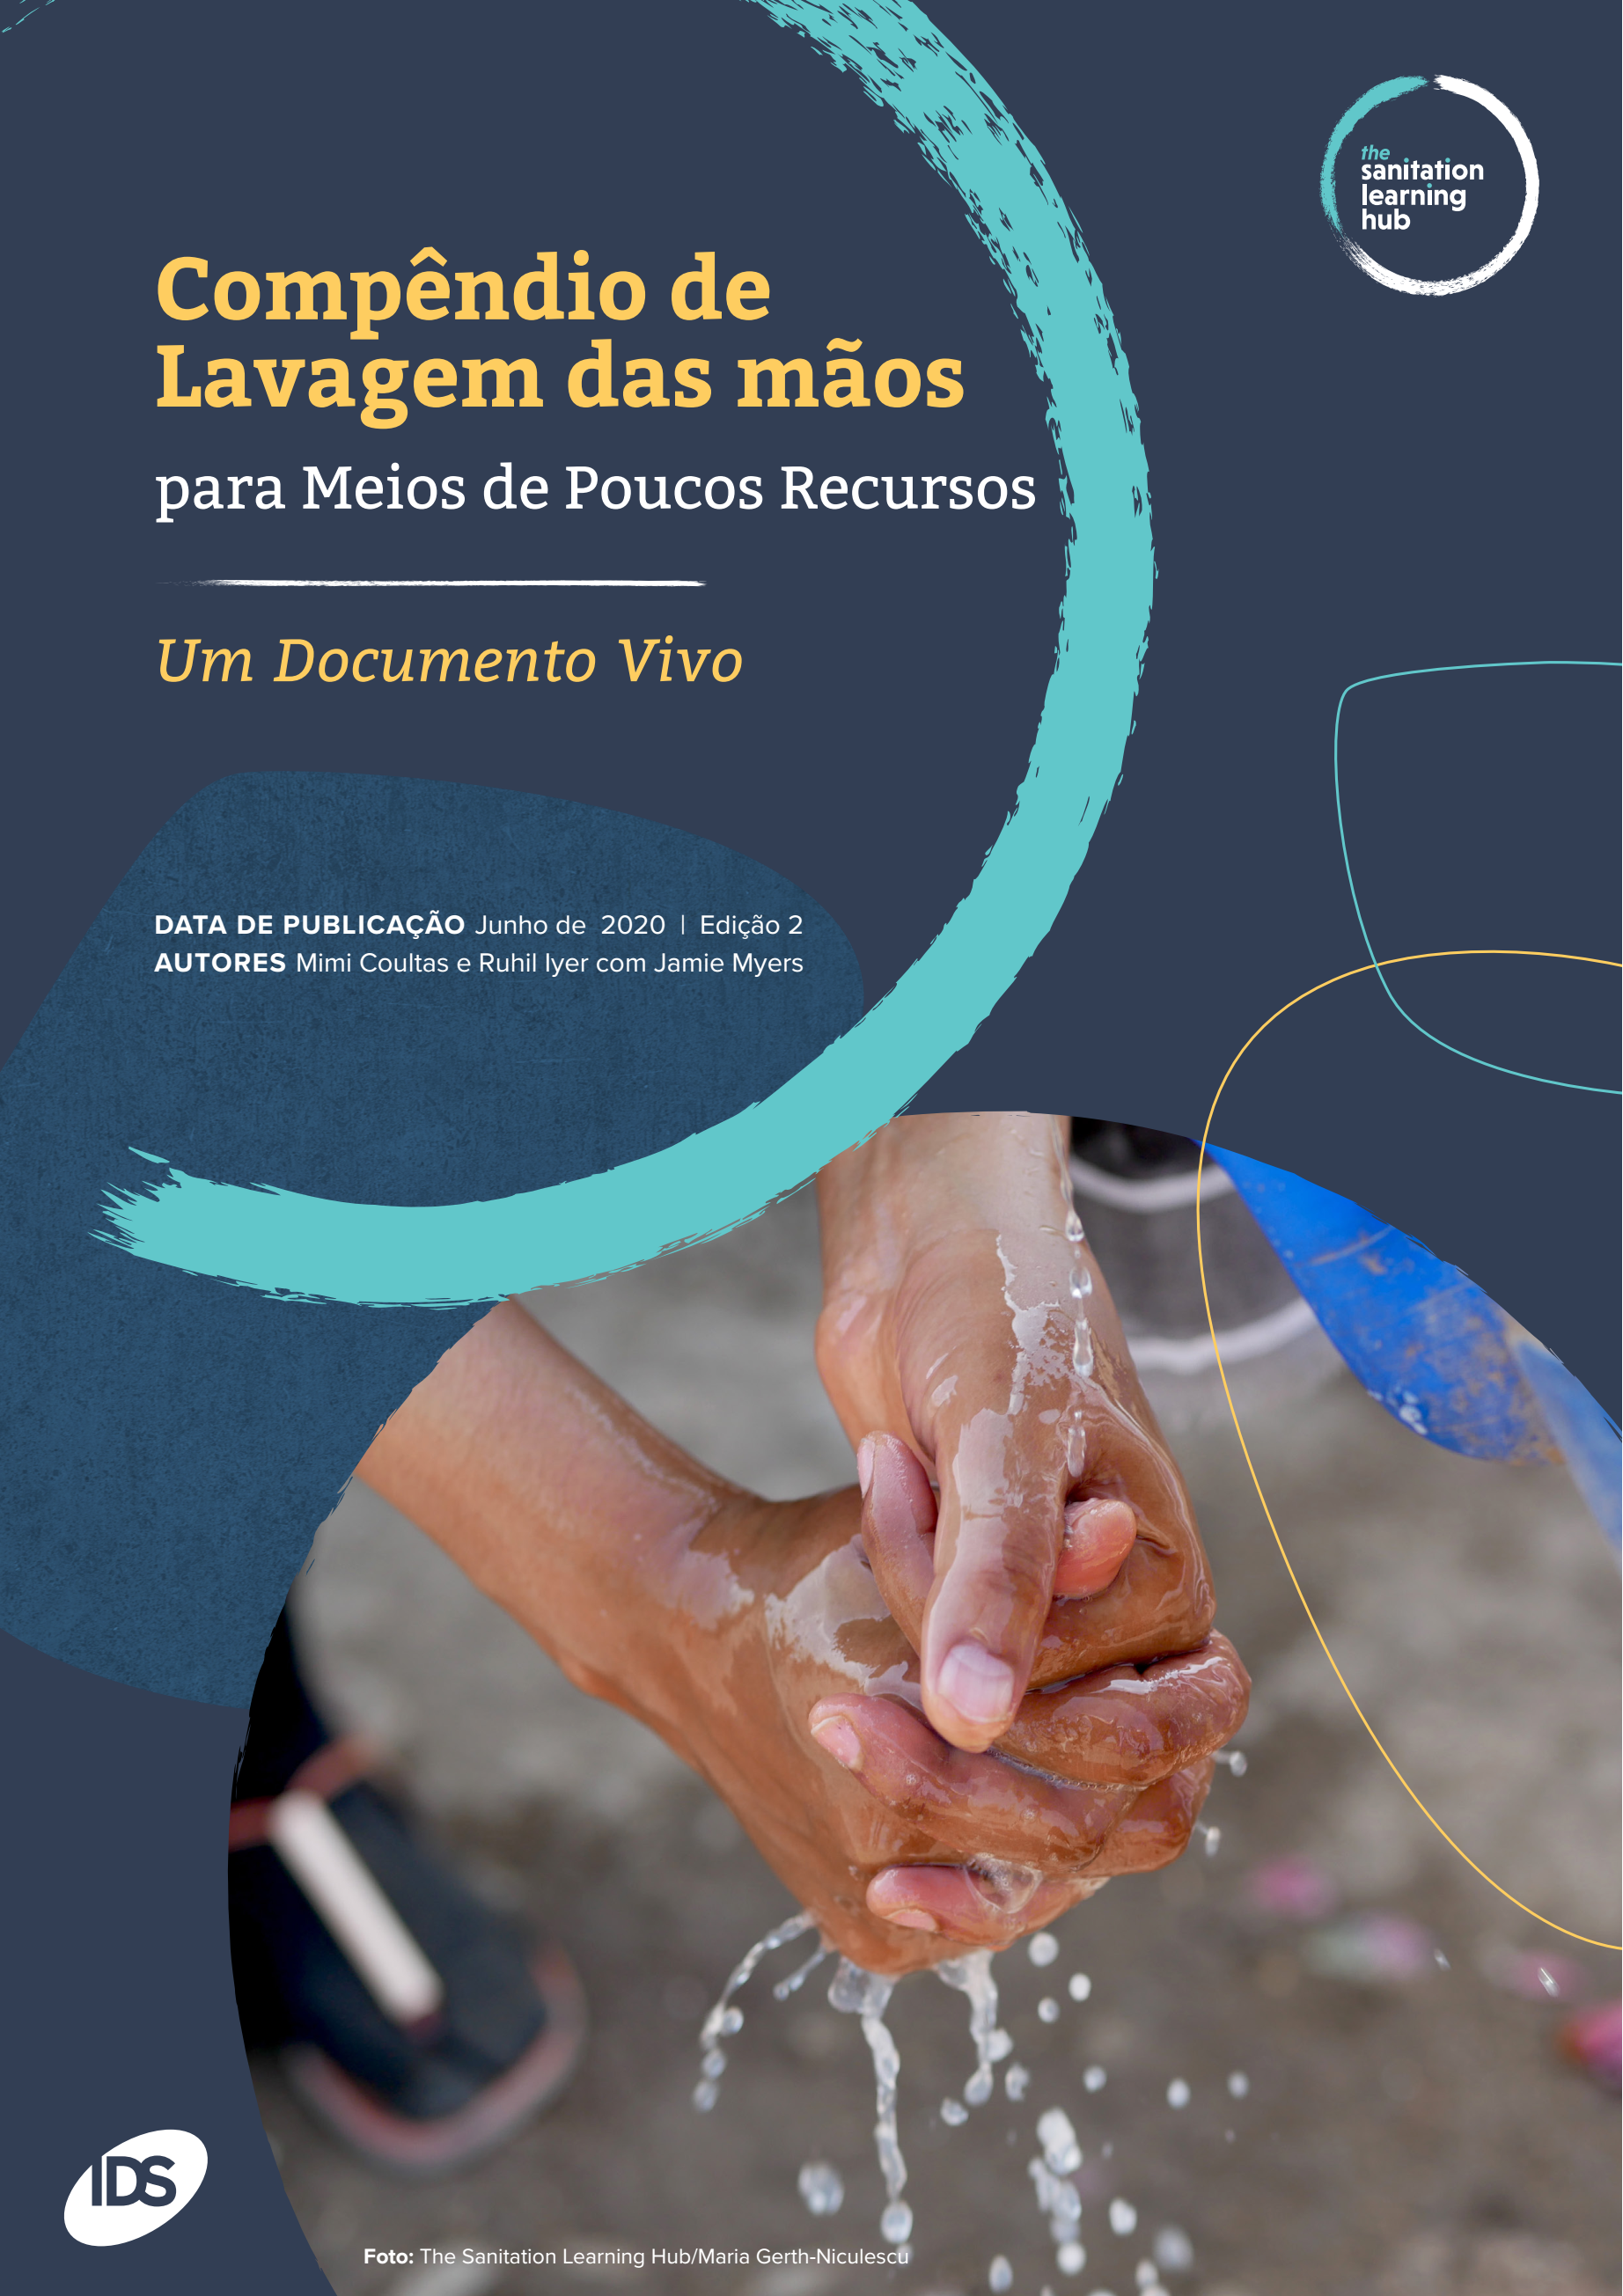 Handwashing Compendium Portuguese